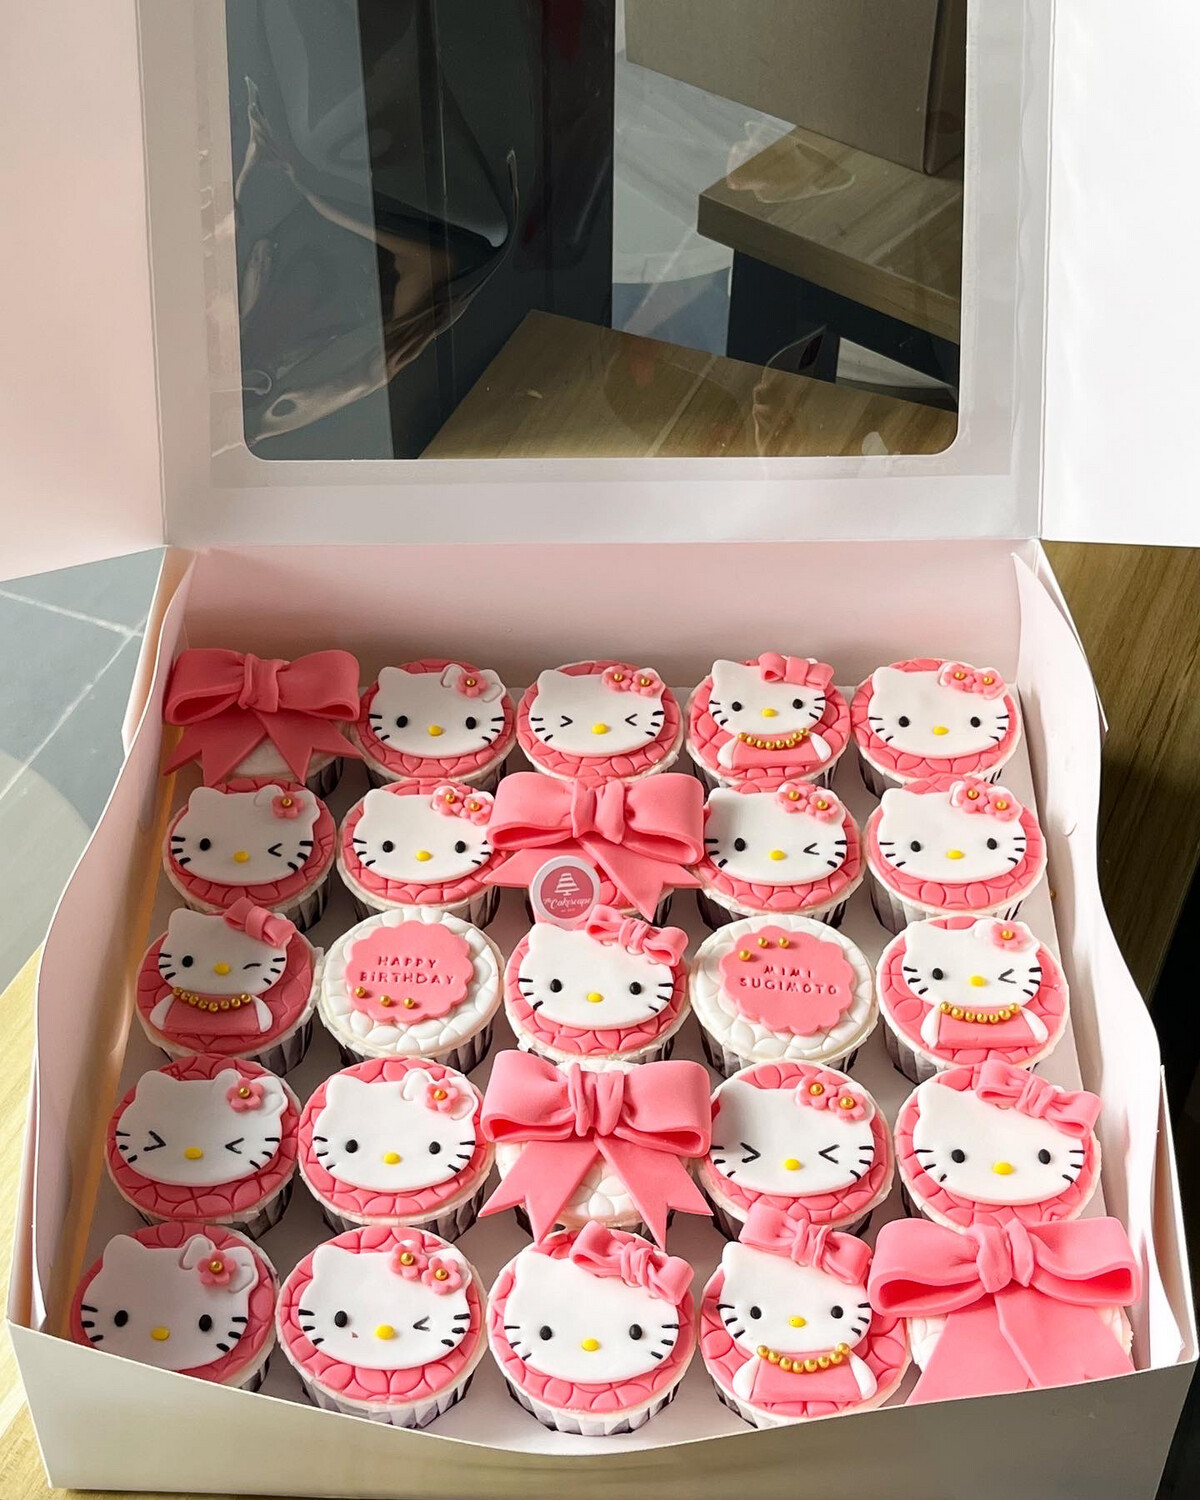 Sanrio - Hello Kitty Cupcakes 2